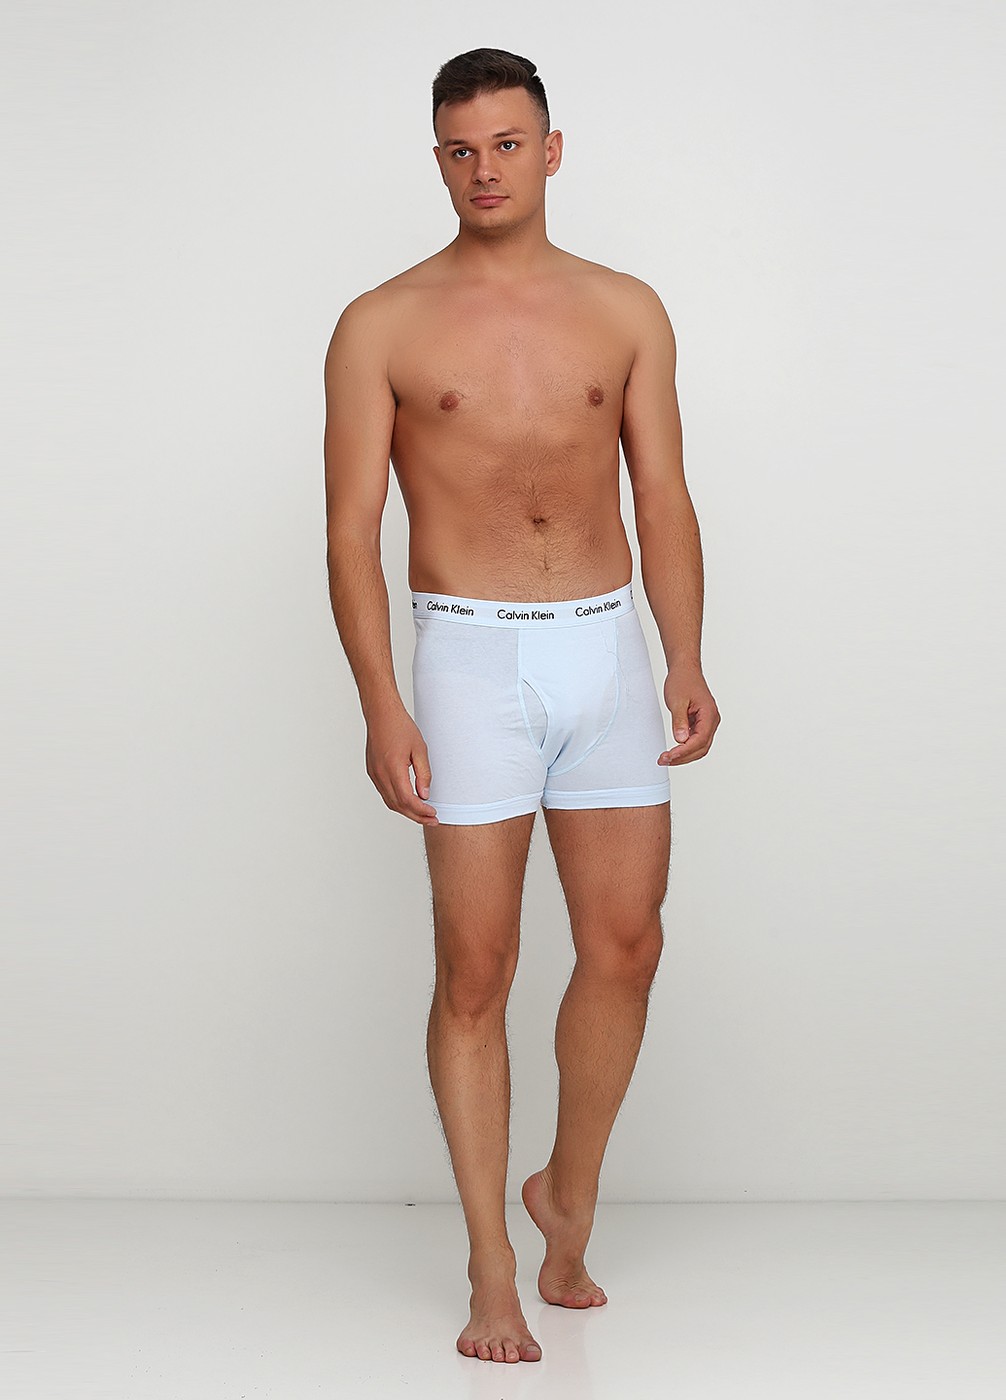 Набор нижнего белья Calvin Klein (3 шт.), XL, XL